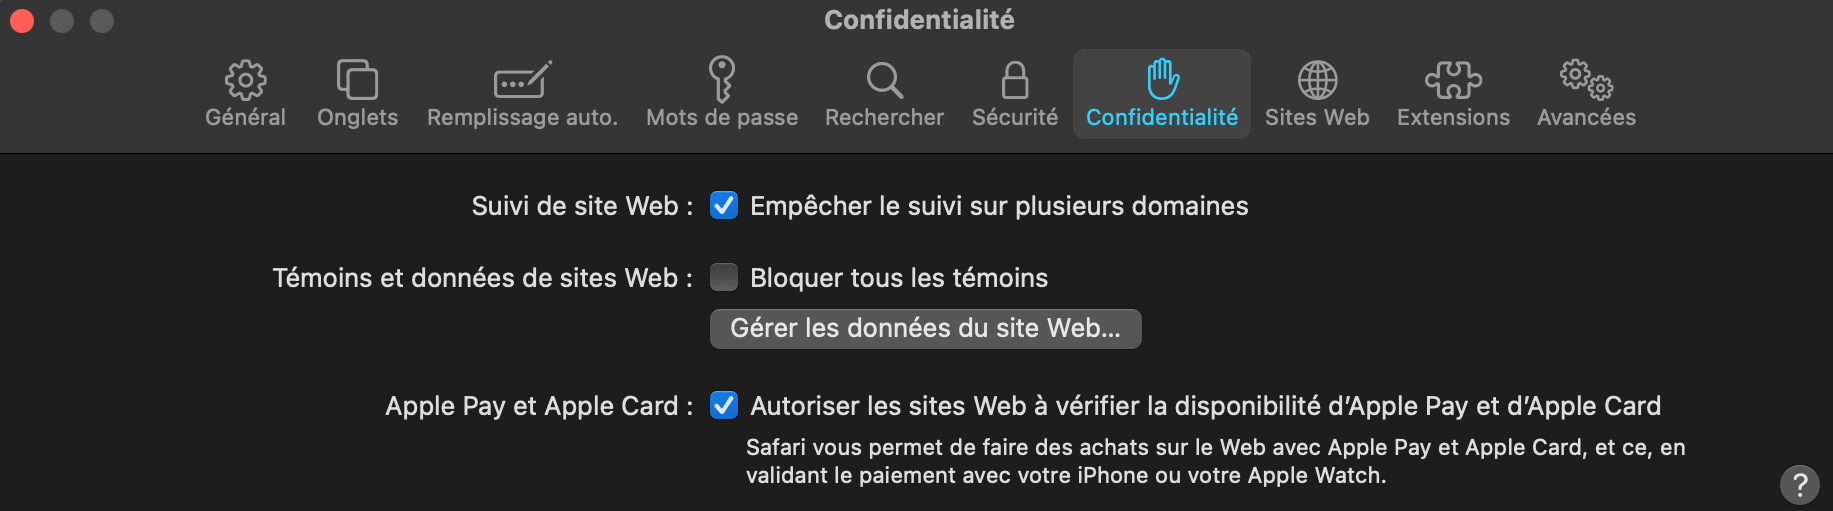 capture d'écran des paramètres de confidentialité sur Safari